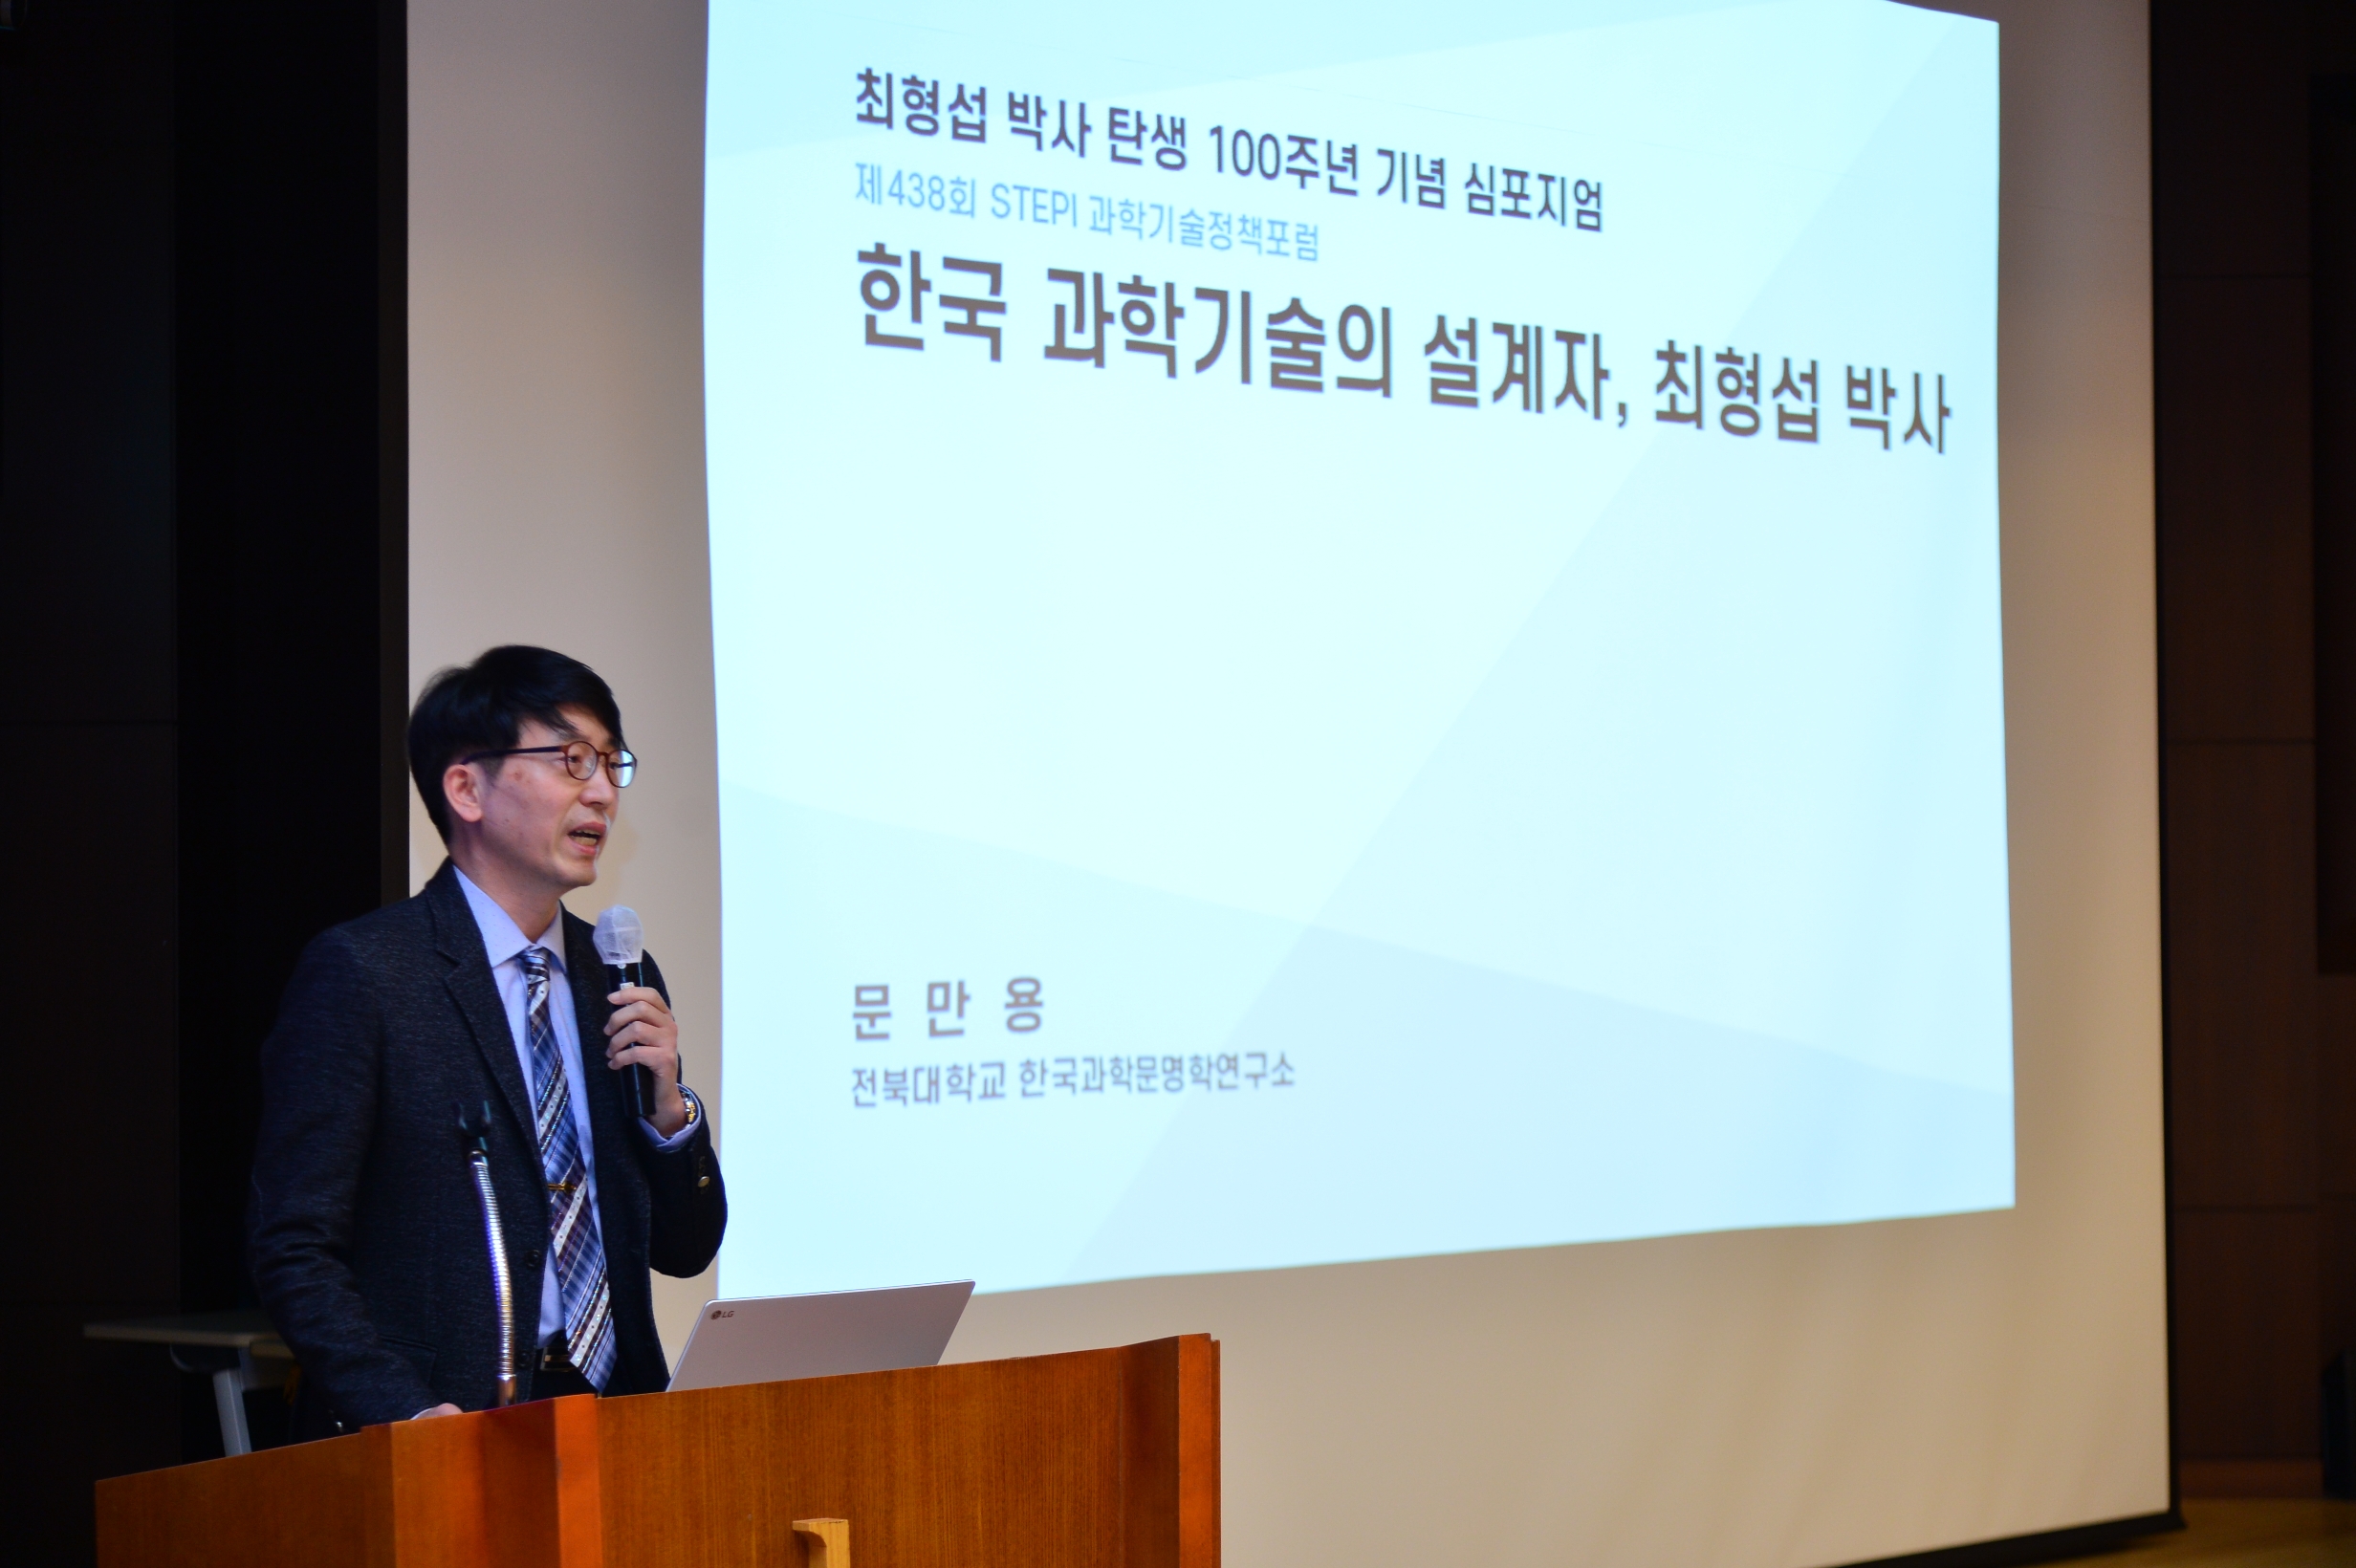 故 송곡 최형섭 박사 탄신 100주년 기념 심포지엄(20.11.2) 주제발표(문만용 교수)